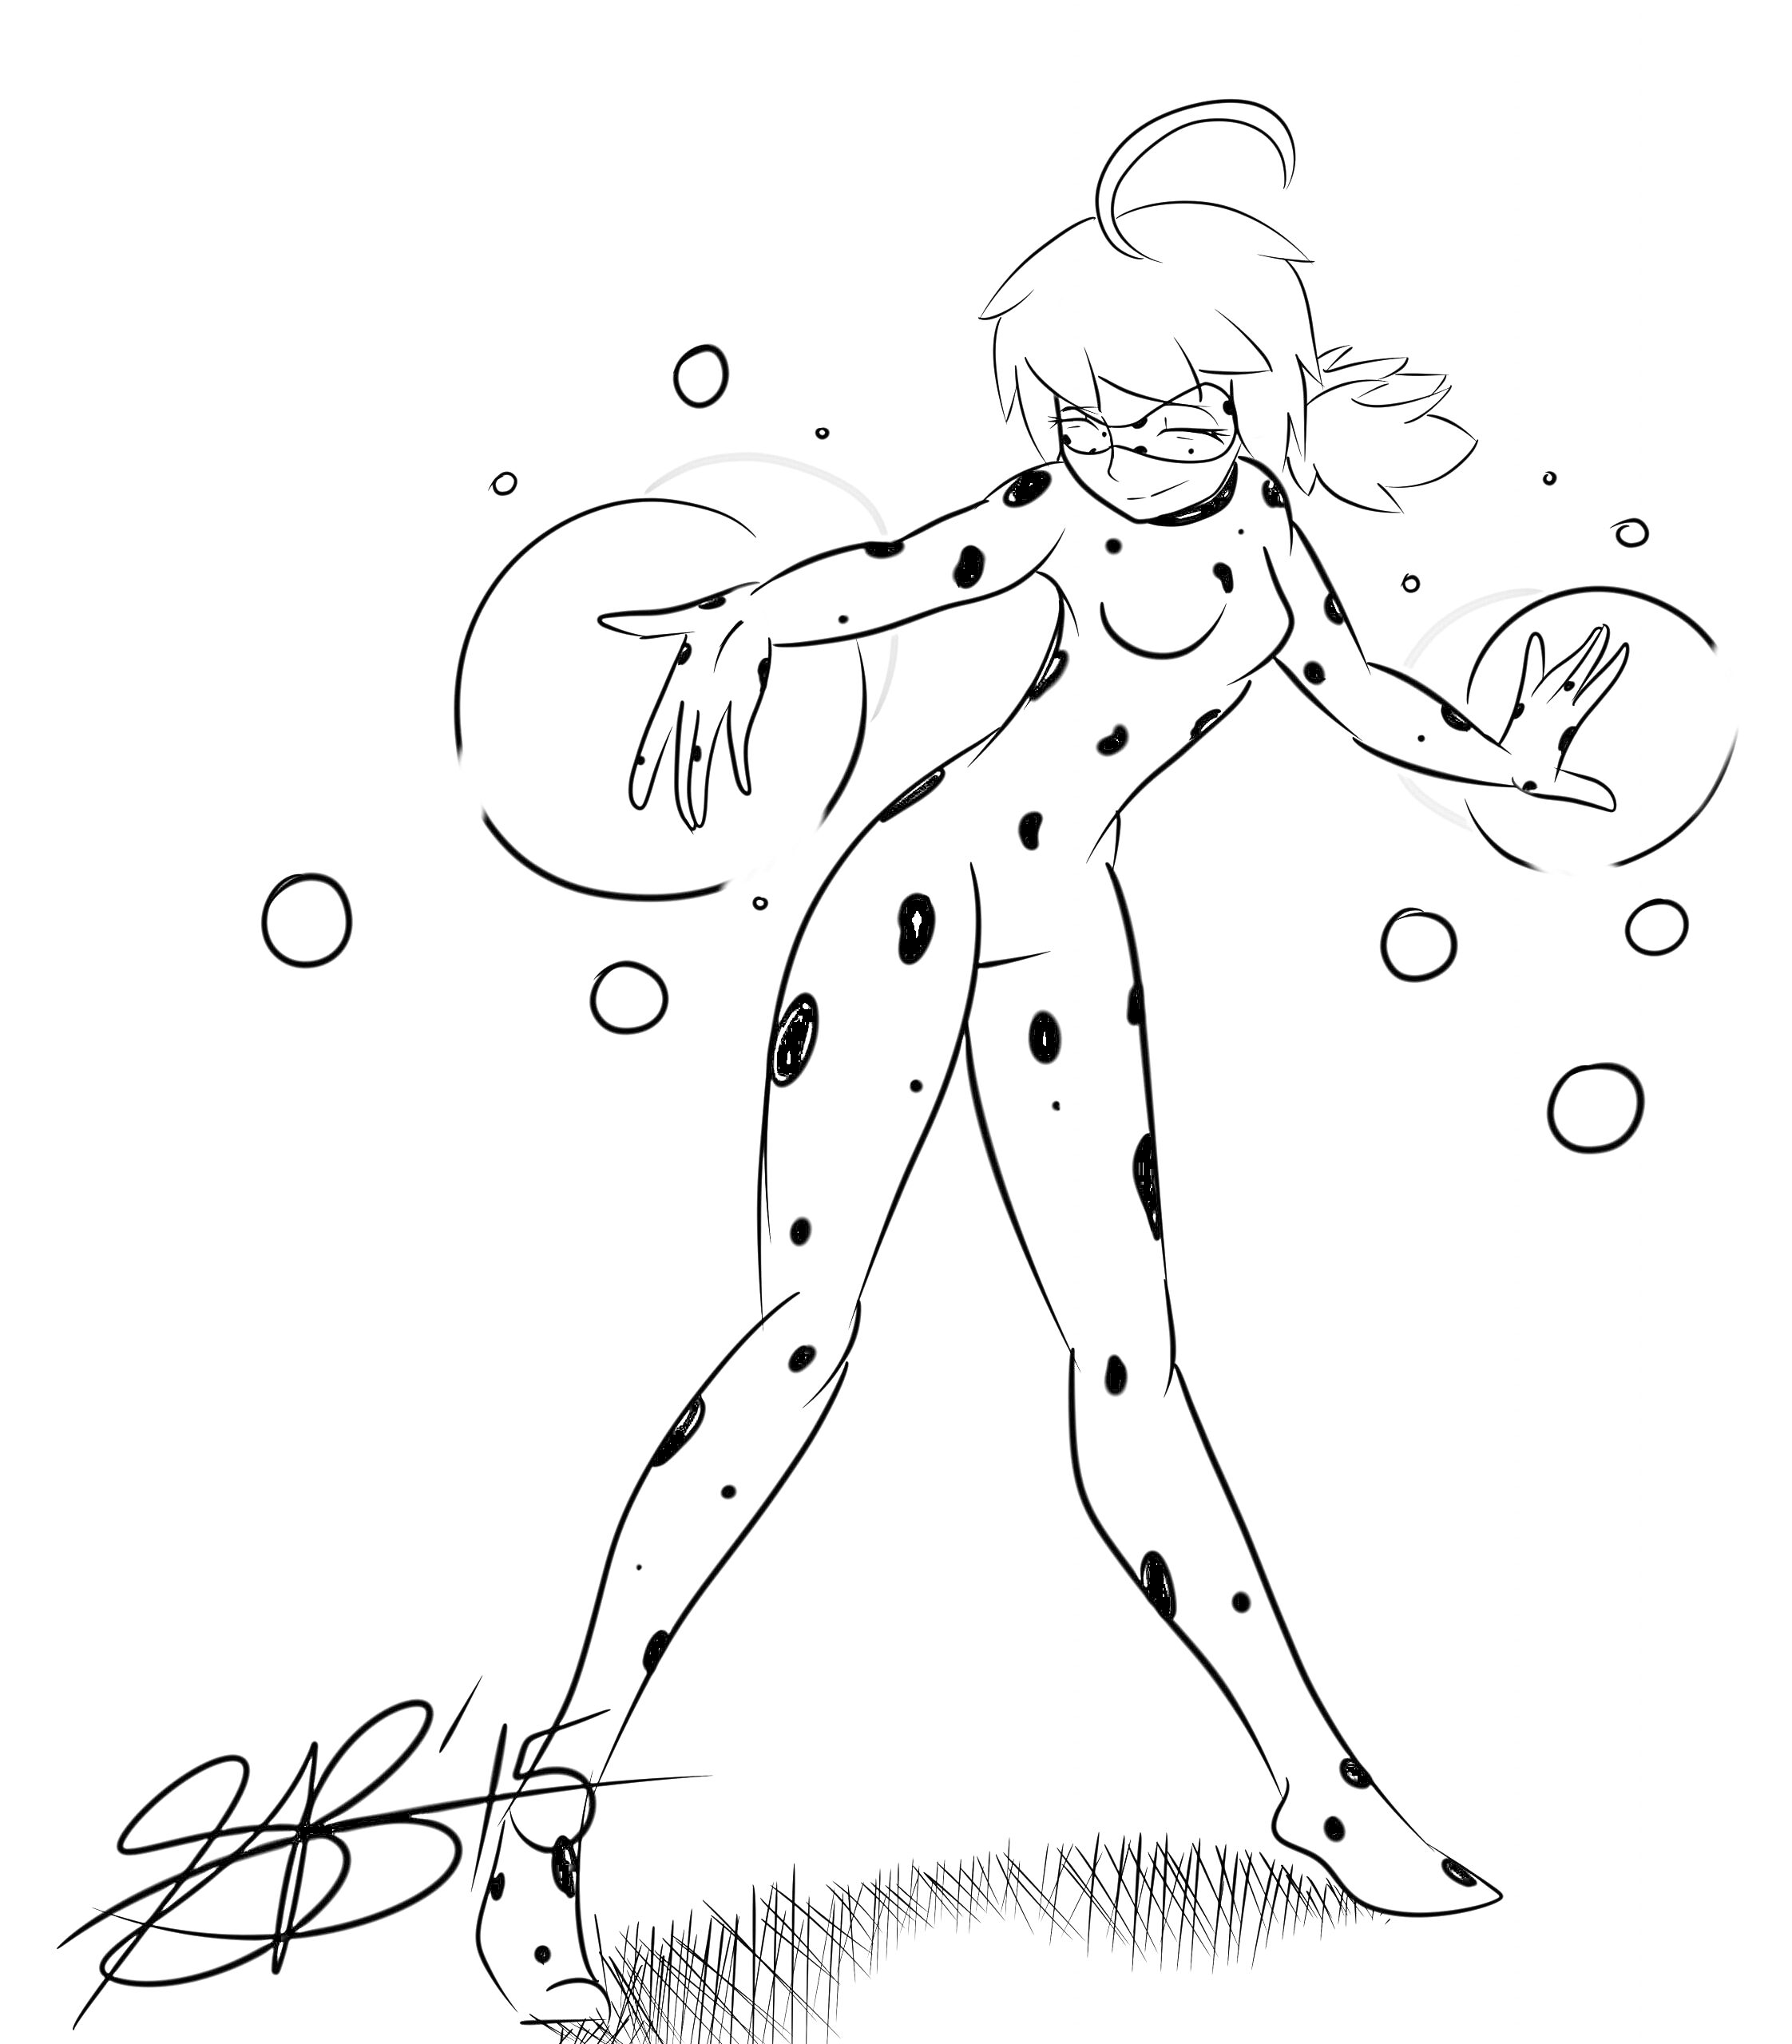 Леди Баг в костюме с пятнами, стоящая в динамичной позе с пузырями вокруг.